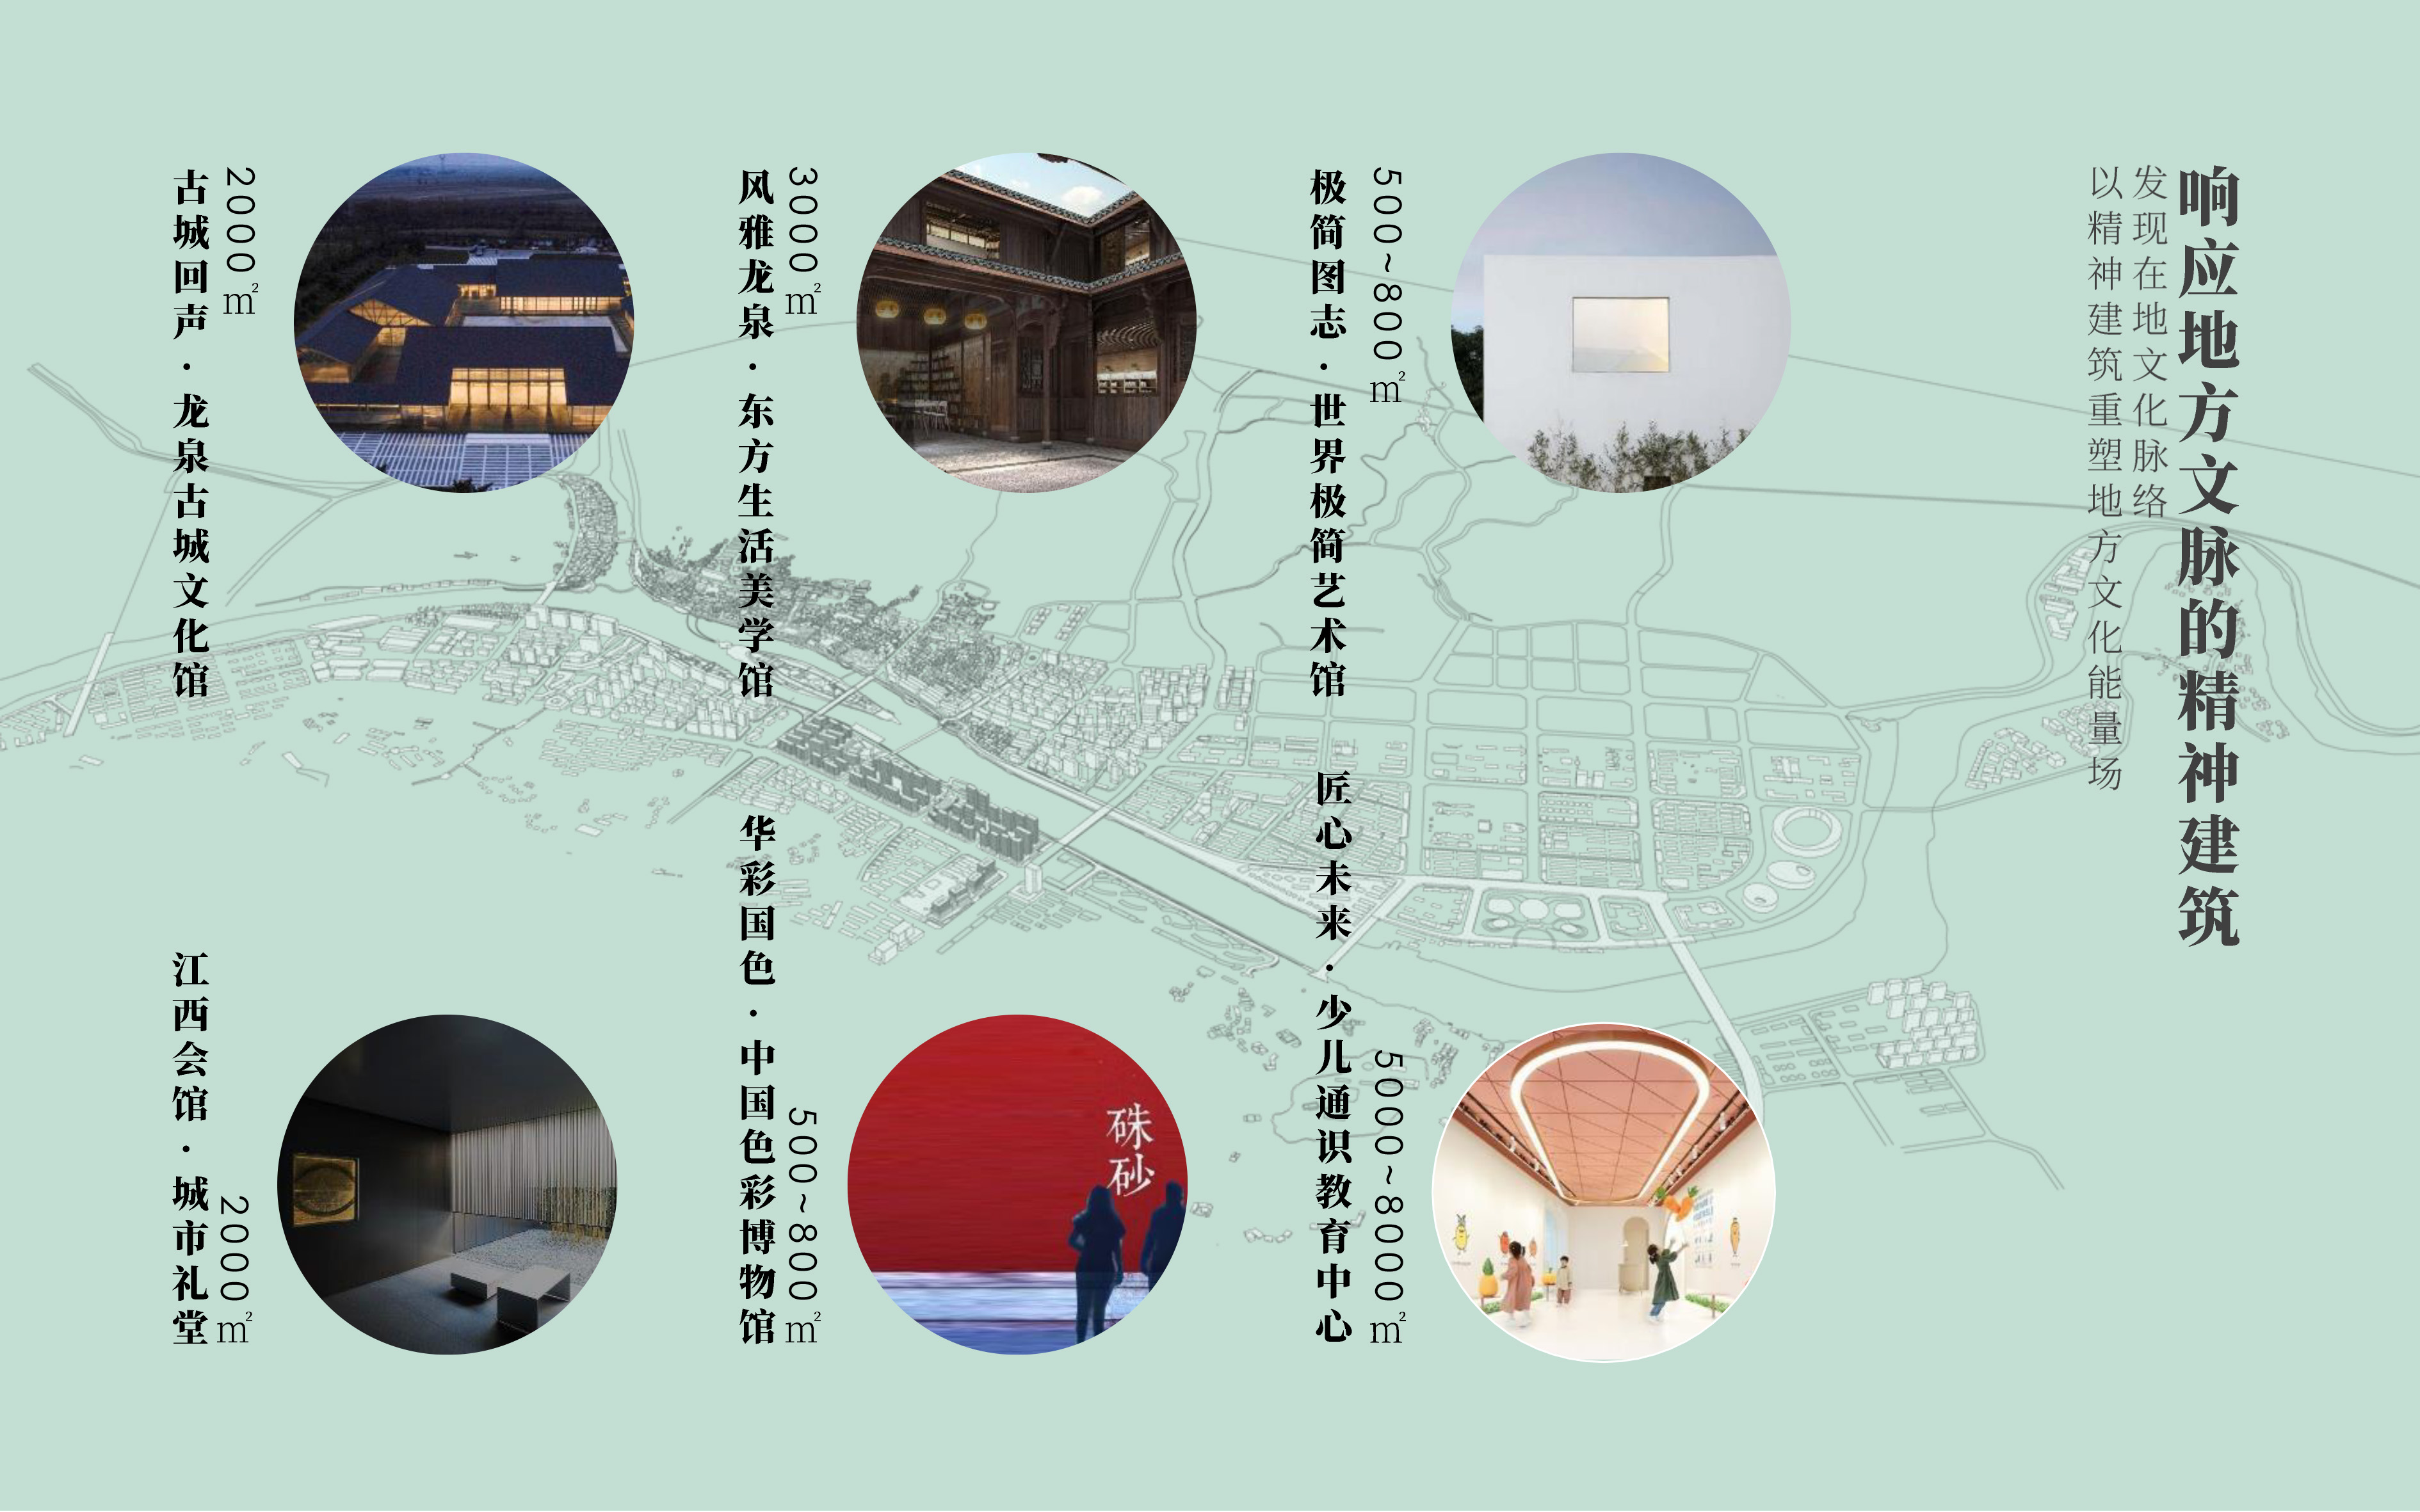 网站图片排版-XINLN-龙泉溪-7.jpg